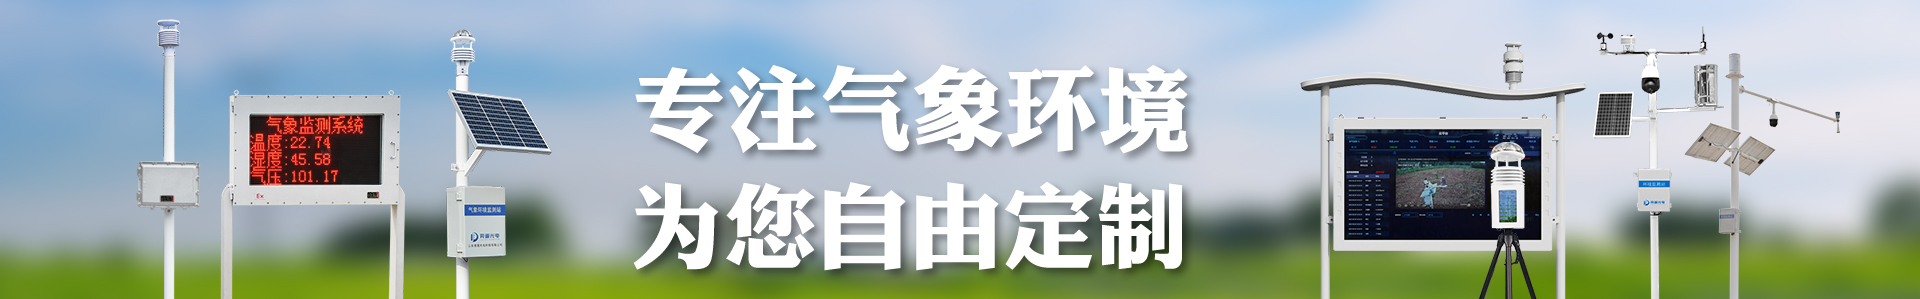 智慧灯杆环境传感器-自动气象站-小型气象站-防爆气象站-光伏气象站-开元旗牌·(中国)官方网站